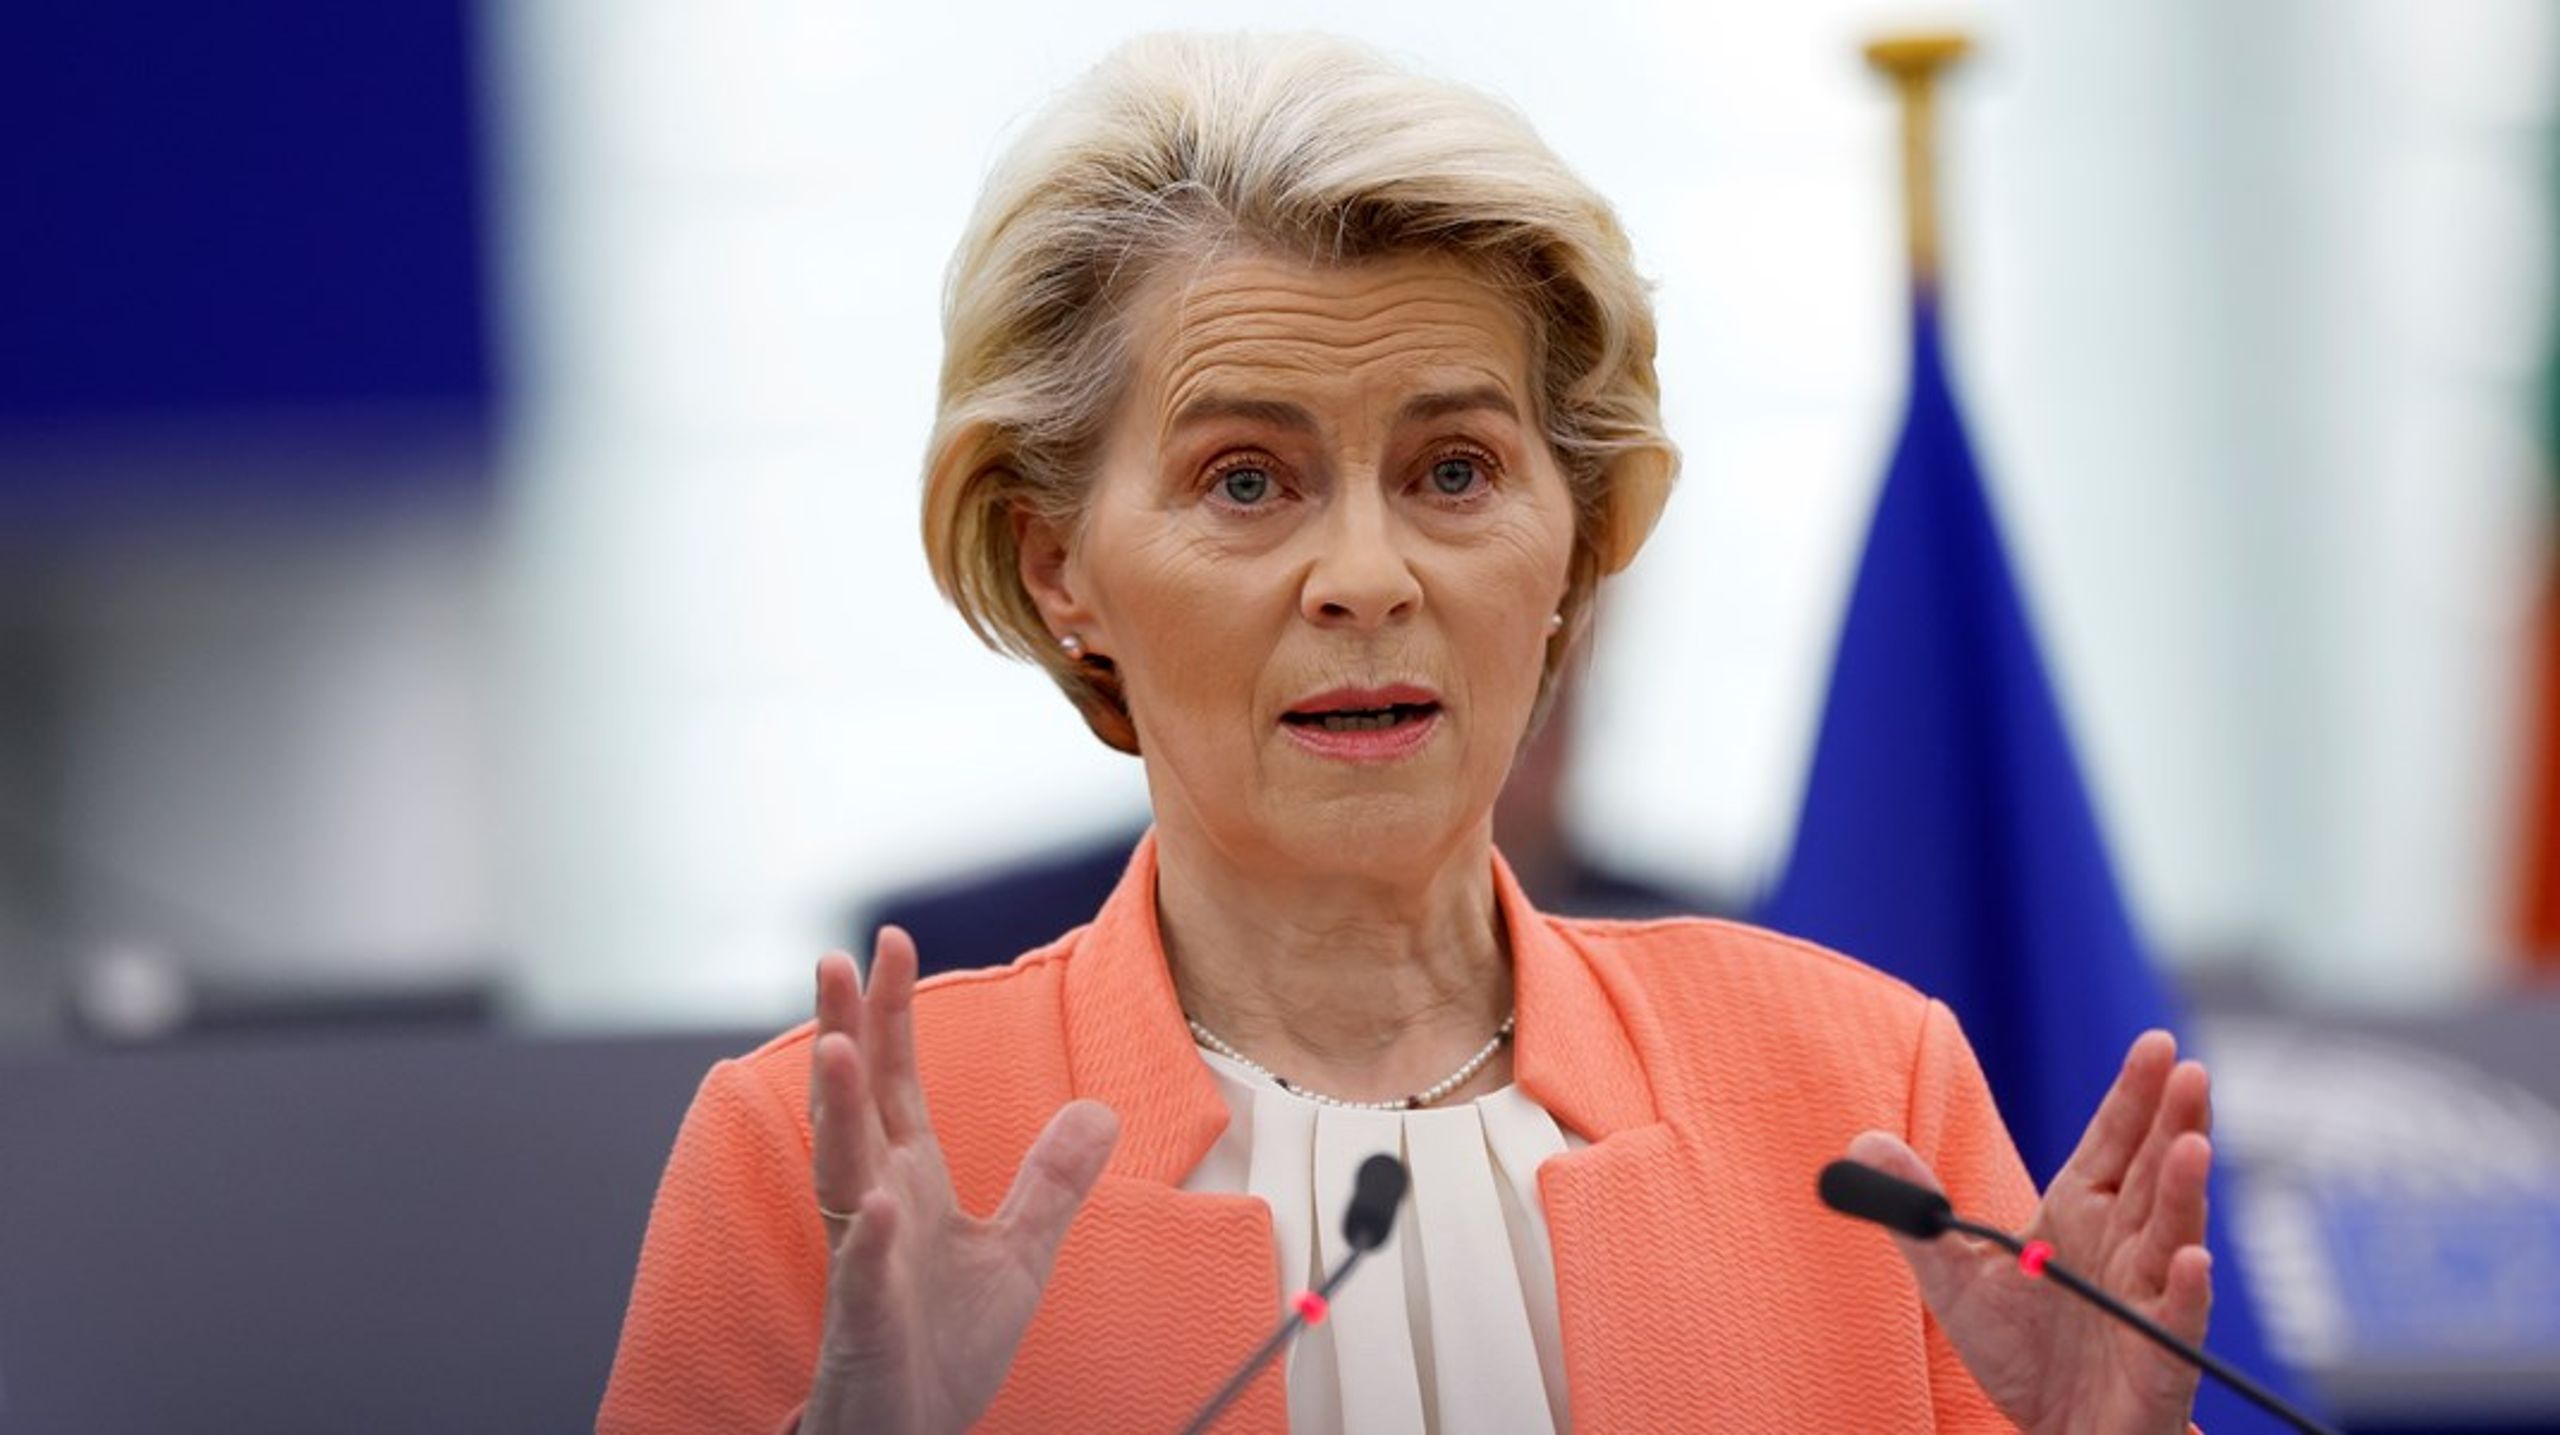 Ursula von der Leyen er EU-kommisjonens president. Hun har en lang&nbsp;liste over initiativ Kommisjonen ønsker å gjennomføre før en ny Kommisjon vil ta over etter valget i Europaparlamentet.&nbsp;